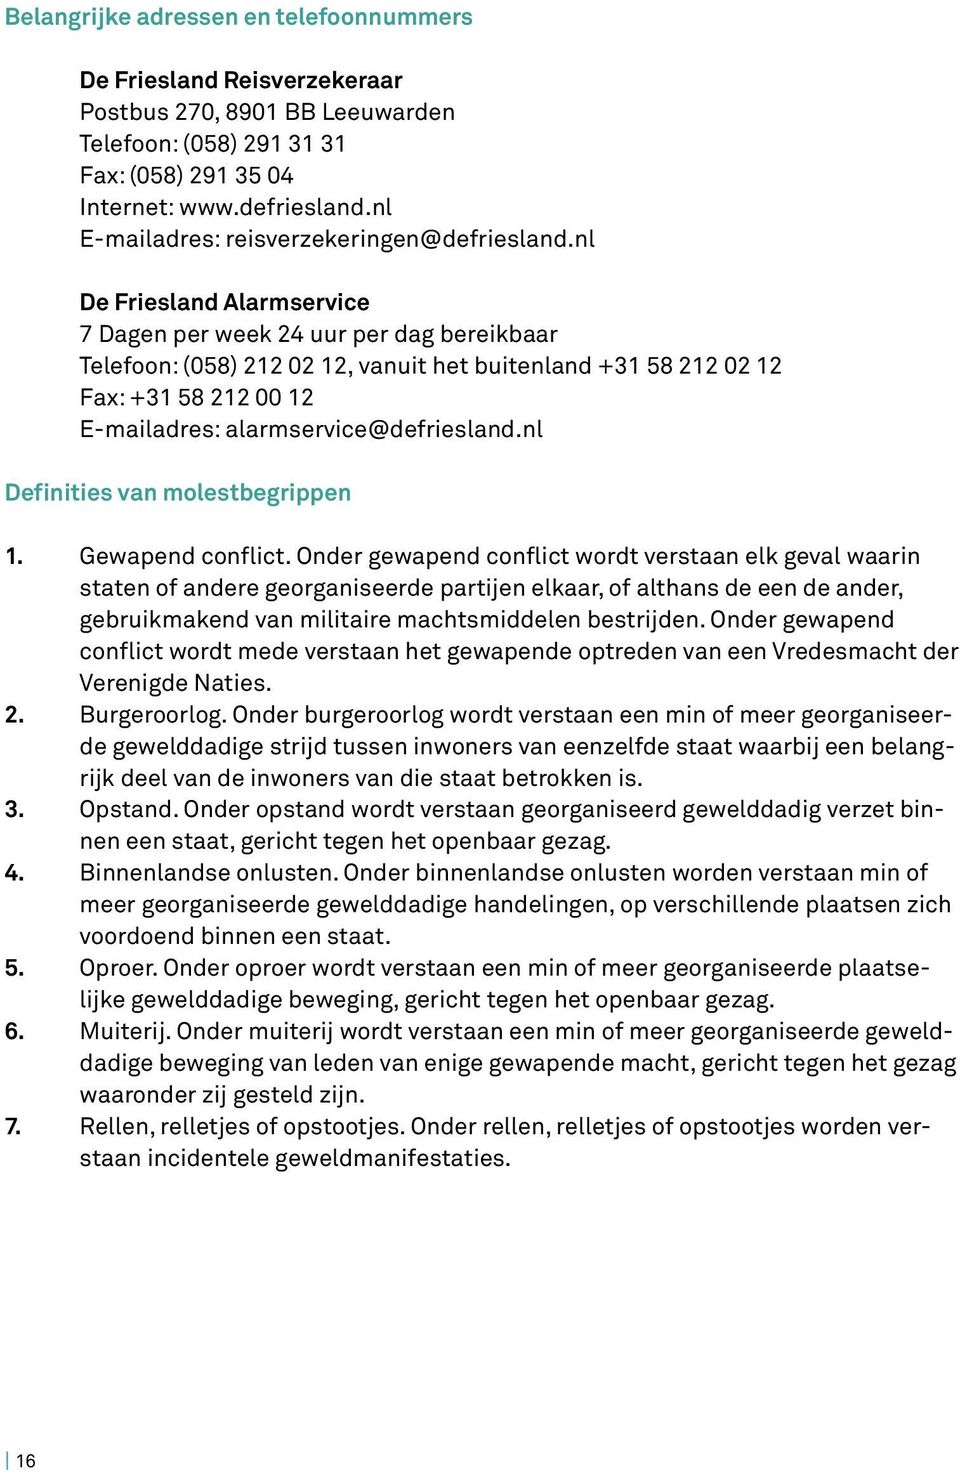 nl De Friesland Alarmservice 7 Dagen per week 24 uur per dag bereikbaar Telefoon: (058) 212 02 12, vanuit het buitenland +31 58 212 02 12 Fax: +31 58 212 00 12 E-mailadres: alarmservice@defriesland.